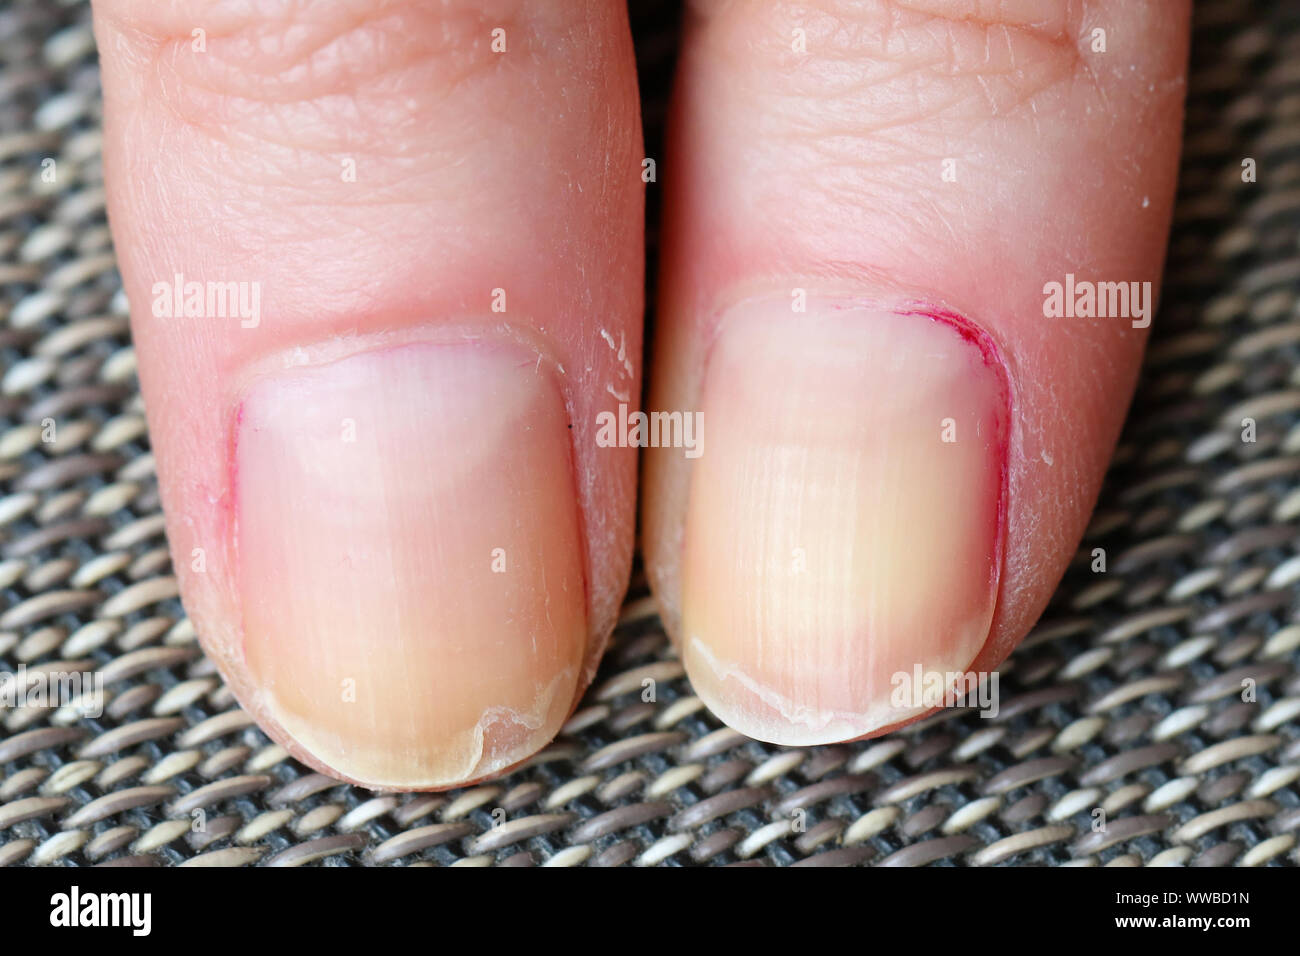 Trockene Haut mit brüchigem Splitten und Peeling Nägel vom Beißen  Stockfotografie - Alamy